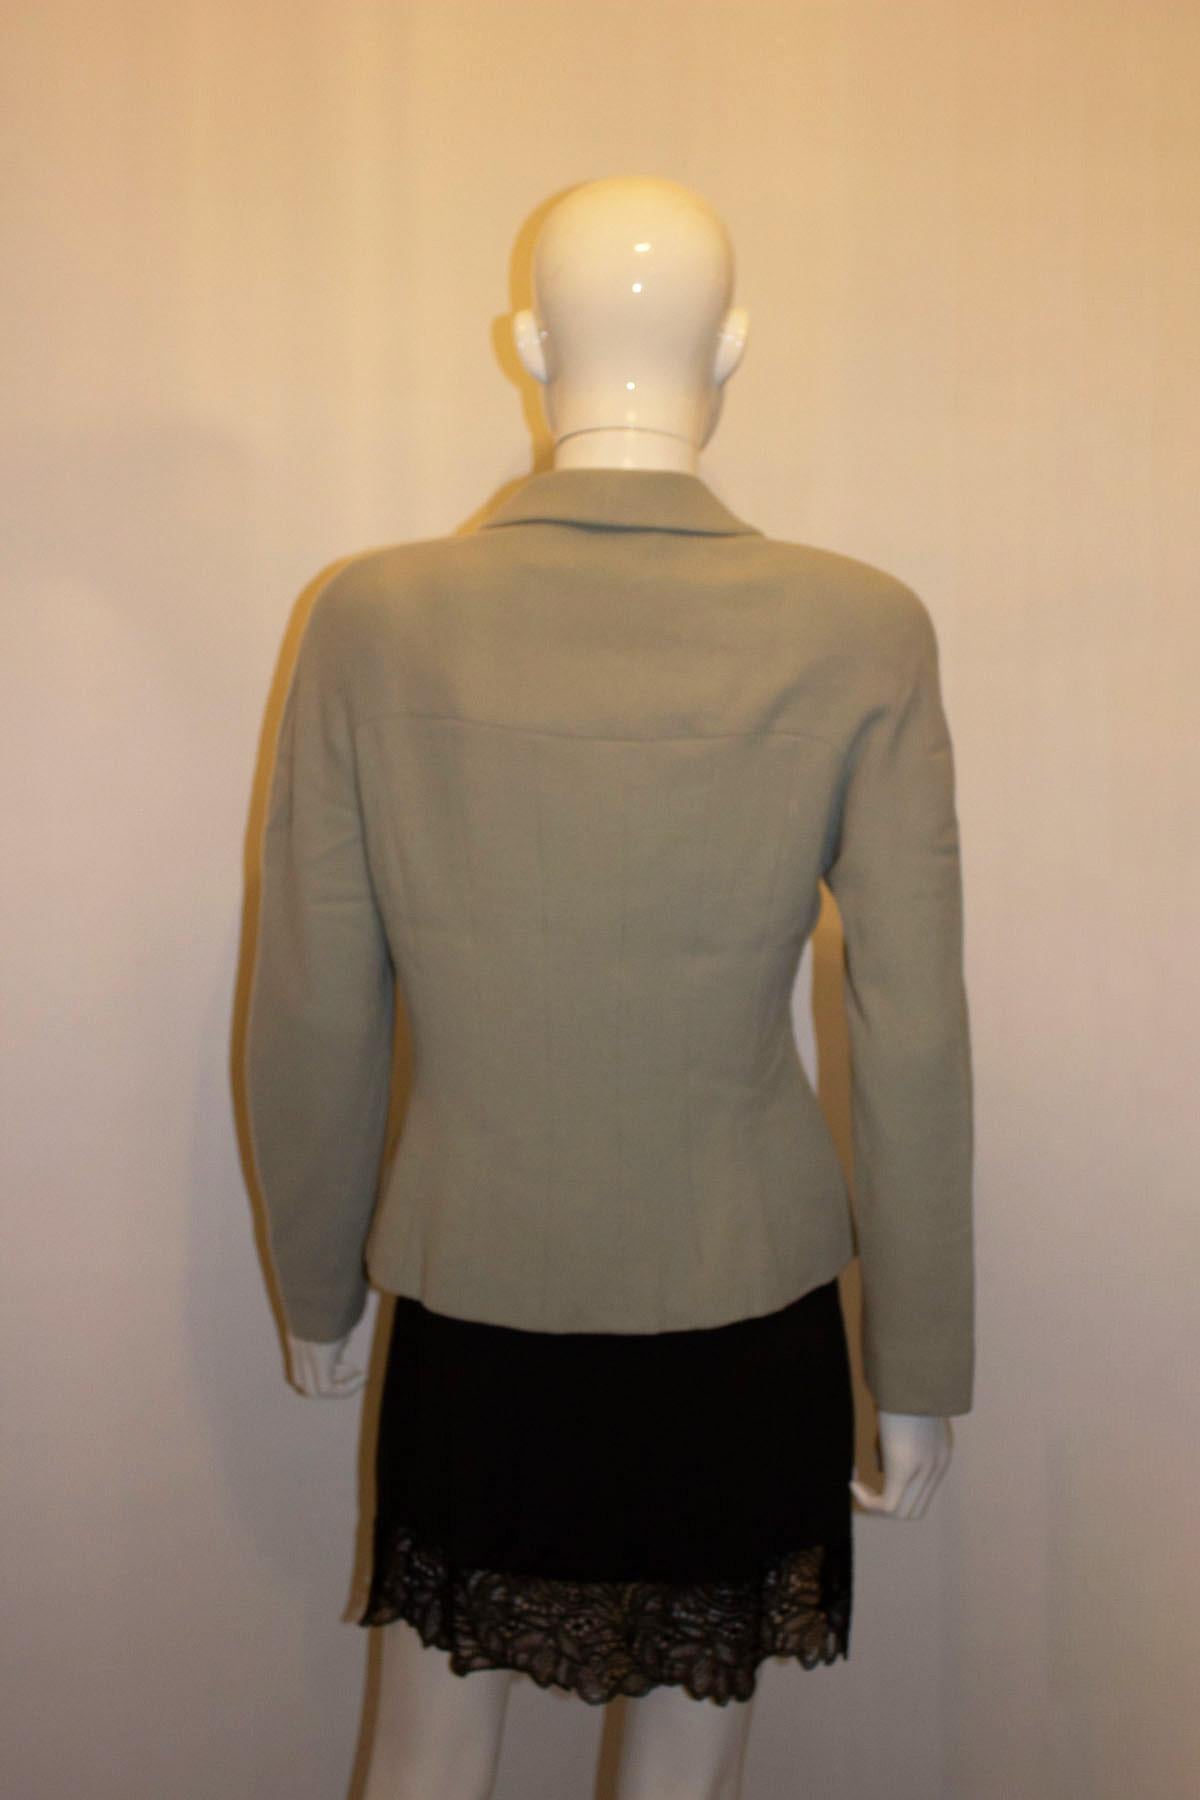 Eine hübsche Vintage-Jacke des britischen Designers und königlichen Favoriten Bruce Oldfield.  In einem  Die Jacke in hellem Salbeigrün hat einen Schalkragen und wird vorne mit drei Knöpfen geschlossen. Wie nicht anders zu erwarten, ist die Jacke